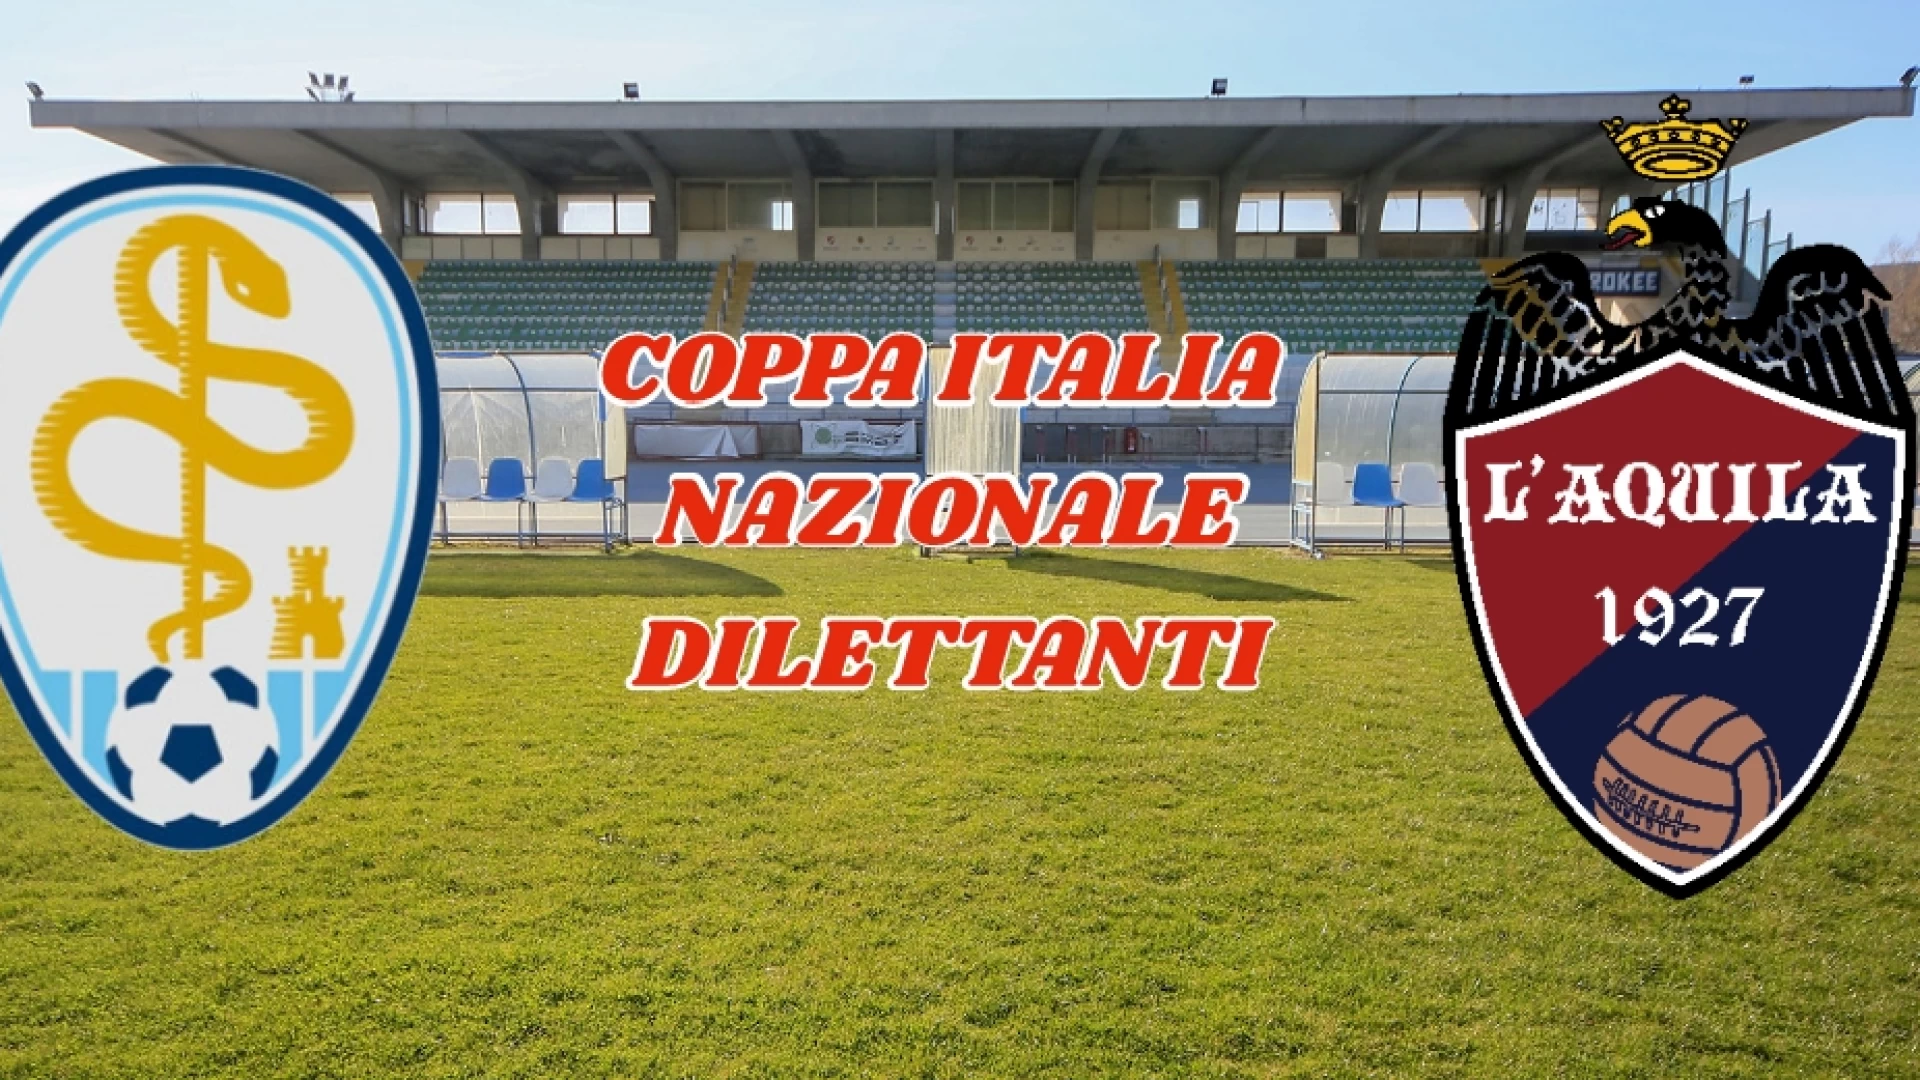 Coppa Italia Nazionale: Il Città di Isernia si aggiudica il primo round: battuta L'Aquila per 1-0